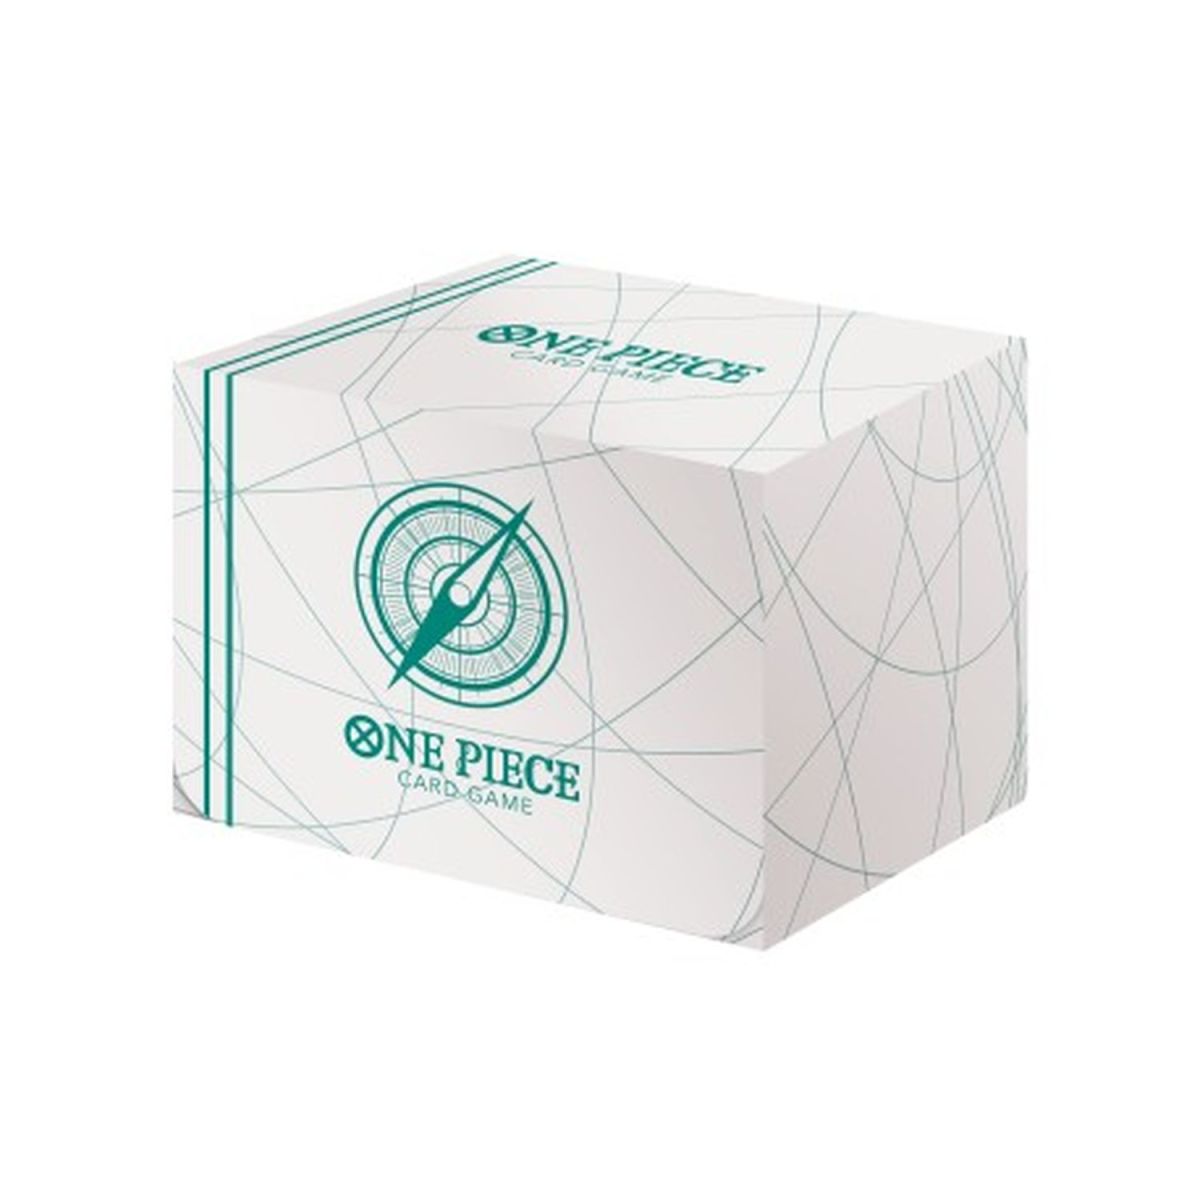 One Piece CG - Deck Box  - Clear Card Case - Blanc - Sealed